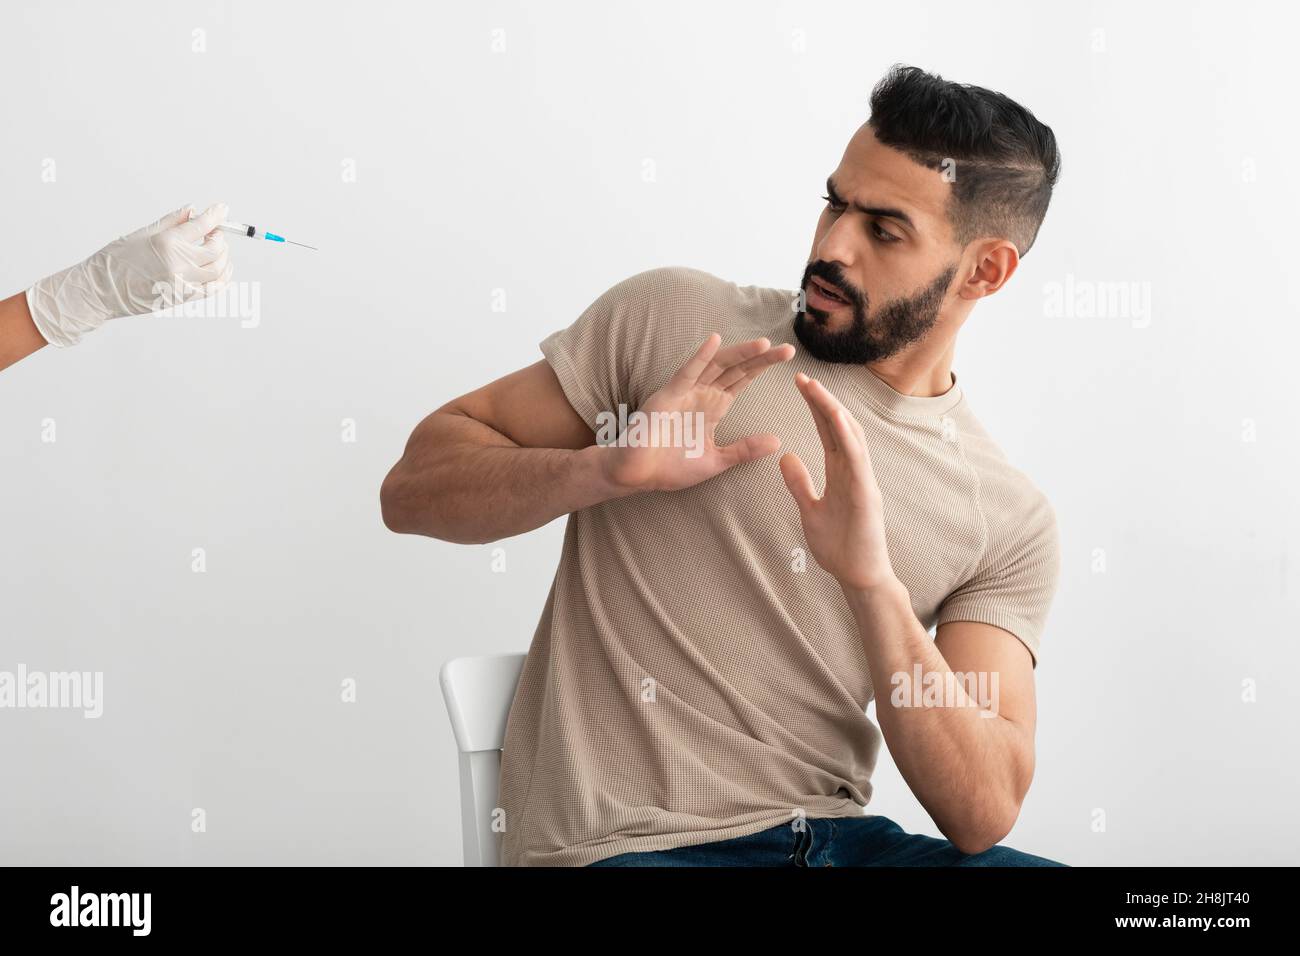 Nessuna vaccinazione. L'uomo arabo temuto che gestisca smettere al medico di offrire siringa con vaccino covido, rifiutando di essere vaccinato Foto Stock